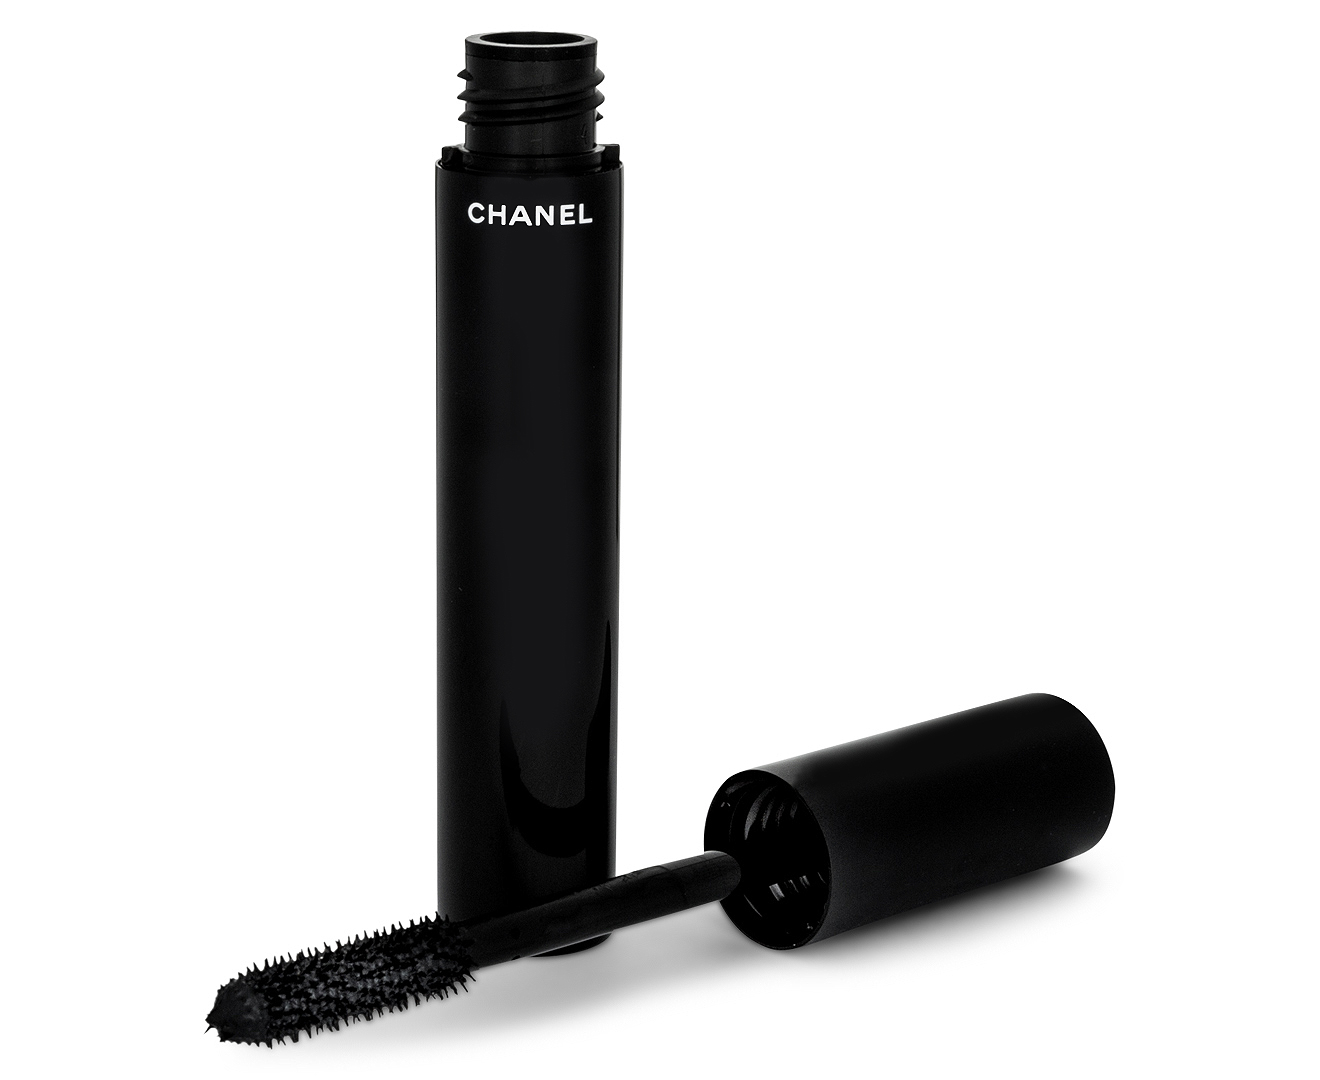 Chanel Le Volume De Chanel Waterproof Mascara 6g - #10 Noir